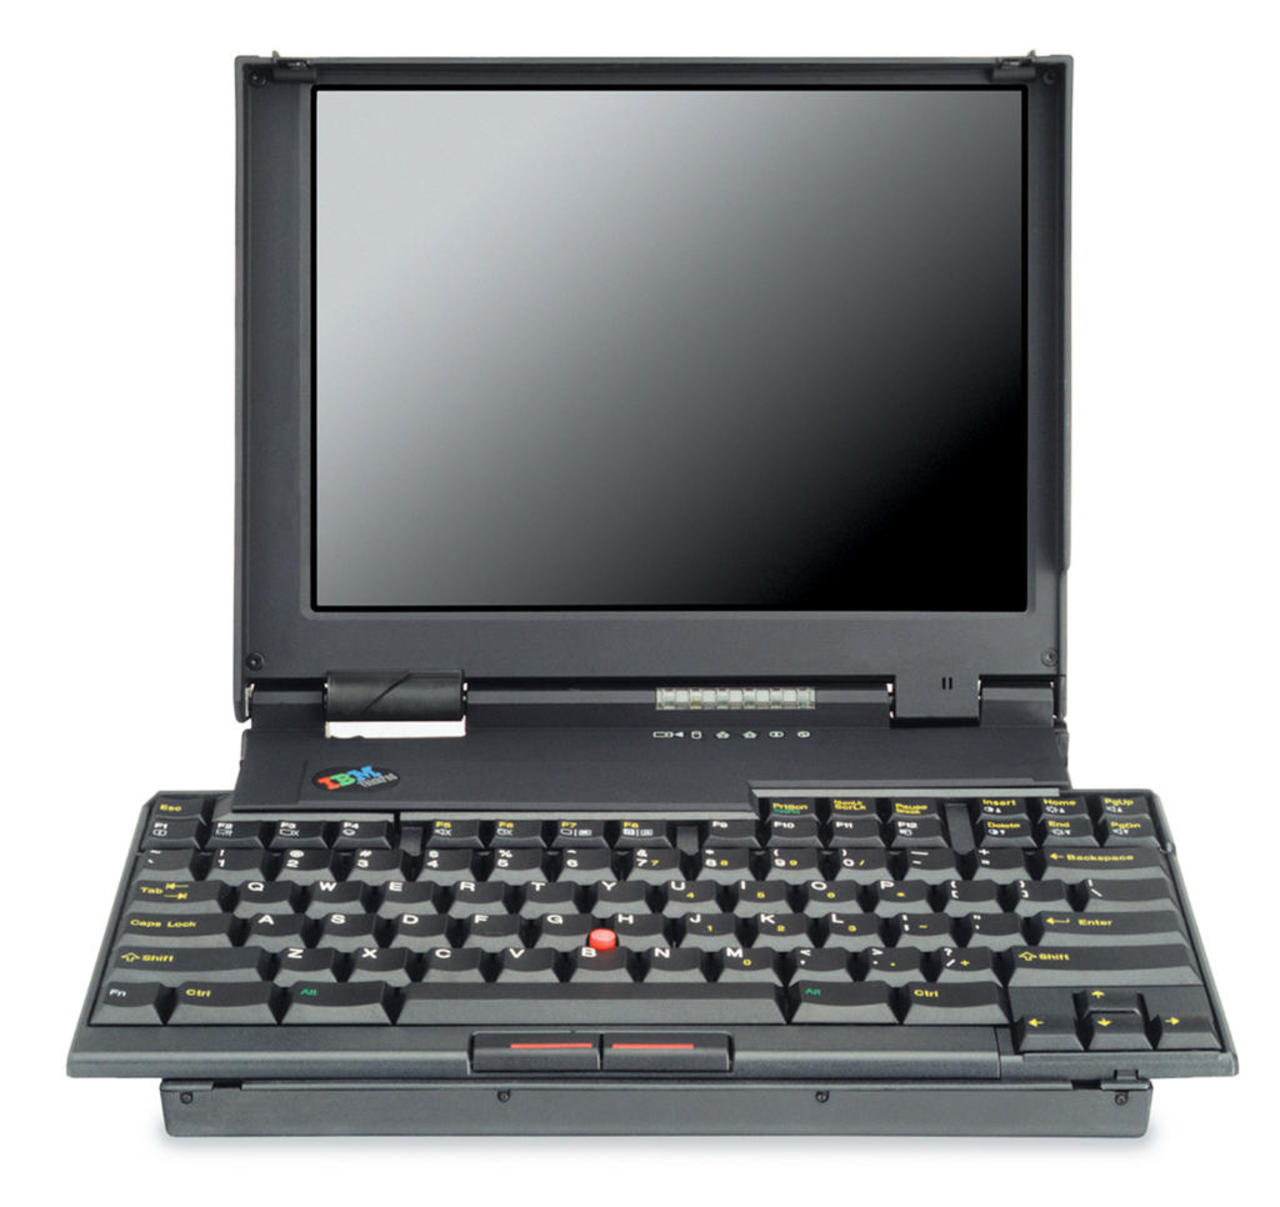 IBM Thinkpad 701